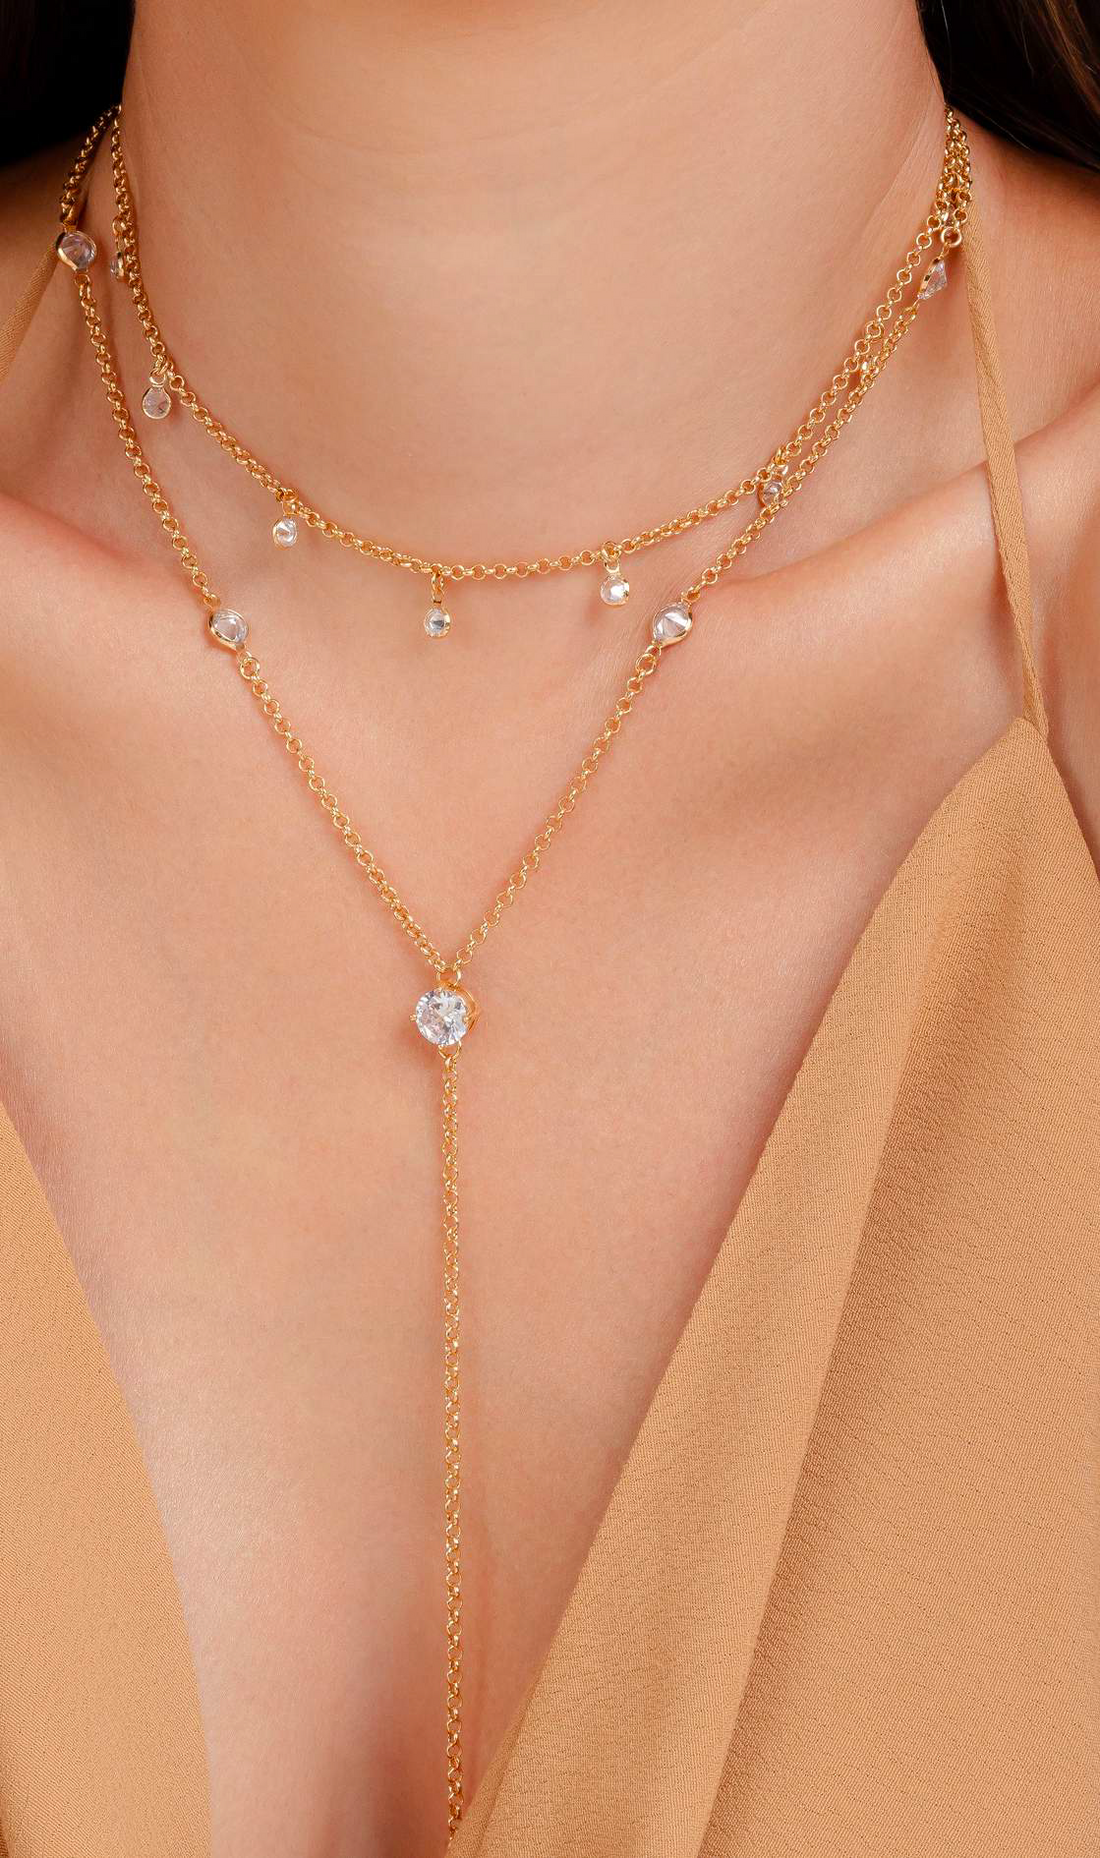 Necklace with zirconia pendants